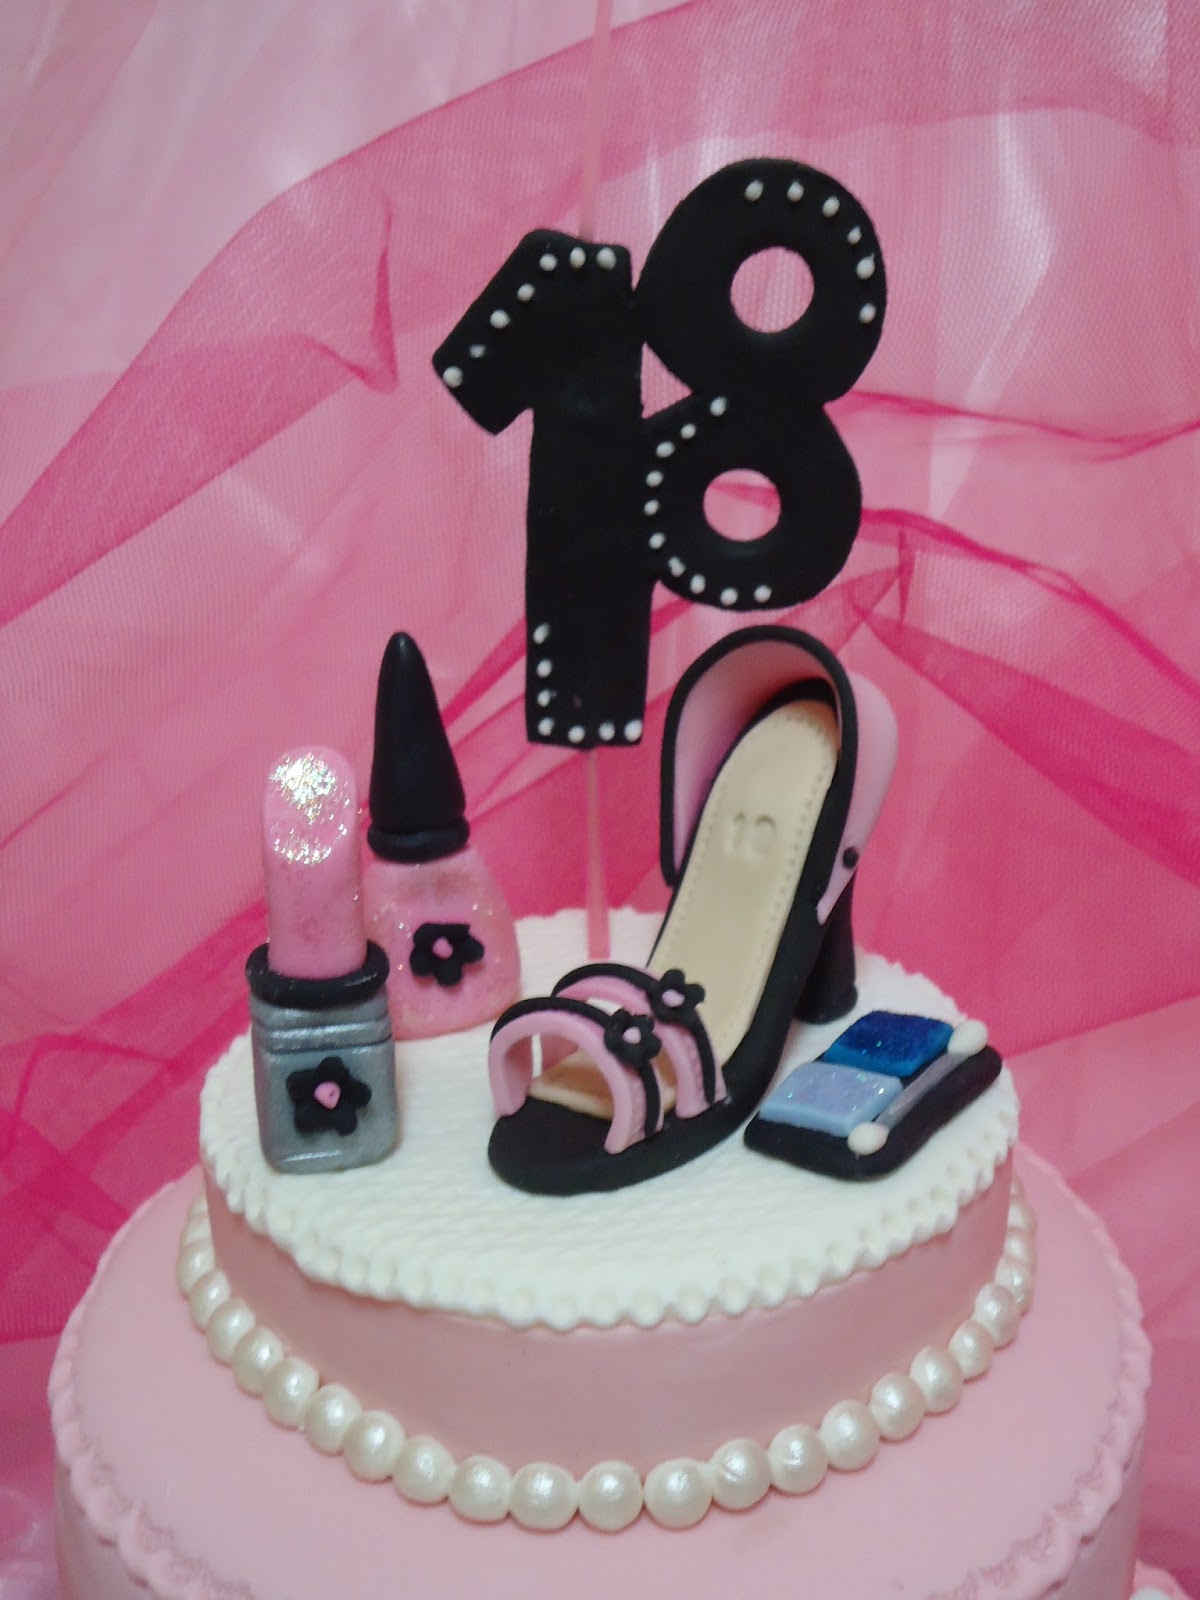 Hermoso pastel en el cumpleaños de la chica durante 18 años